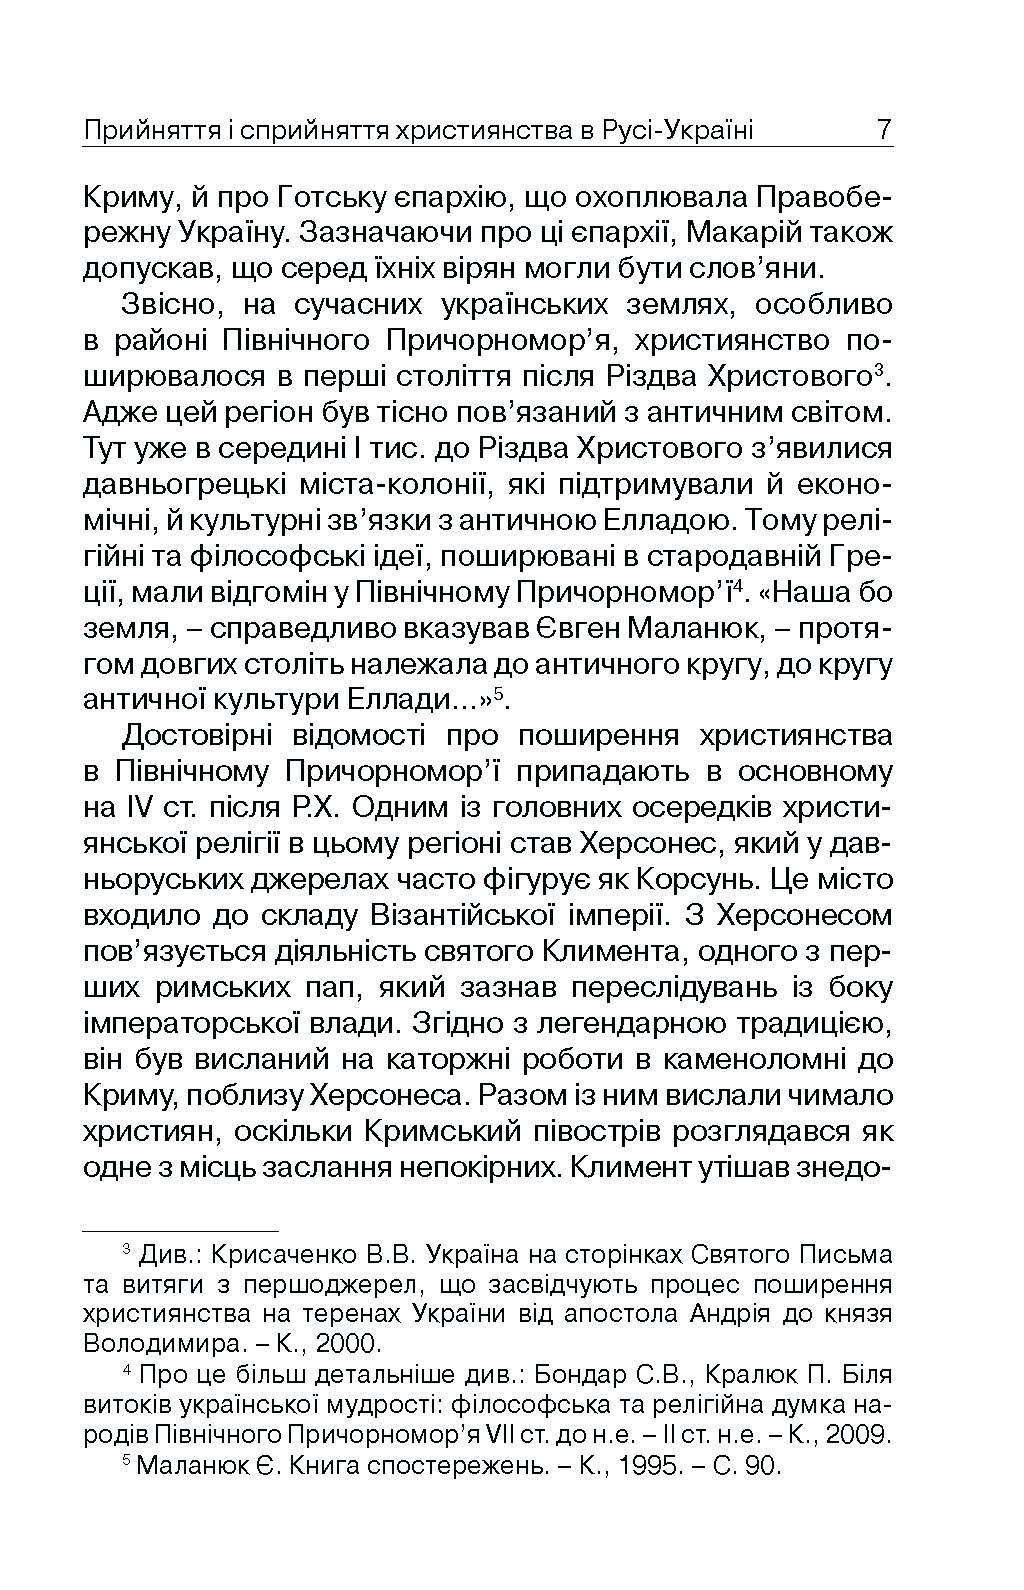 Прийняття і сприйняття християнства в Русі-Україні. Автор — Кралюк П.М.. 